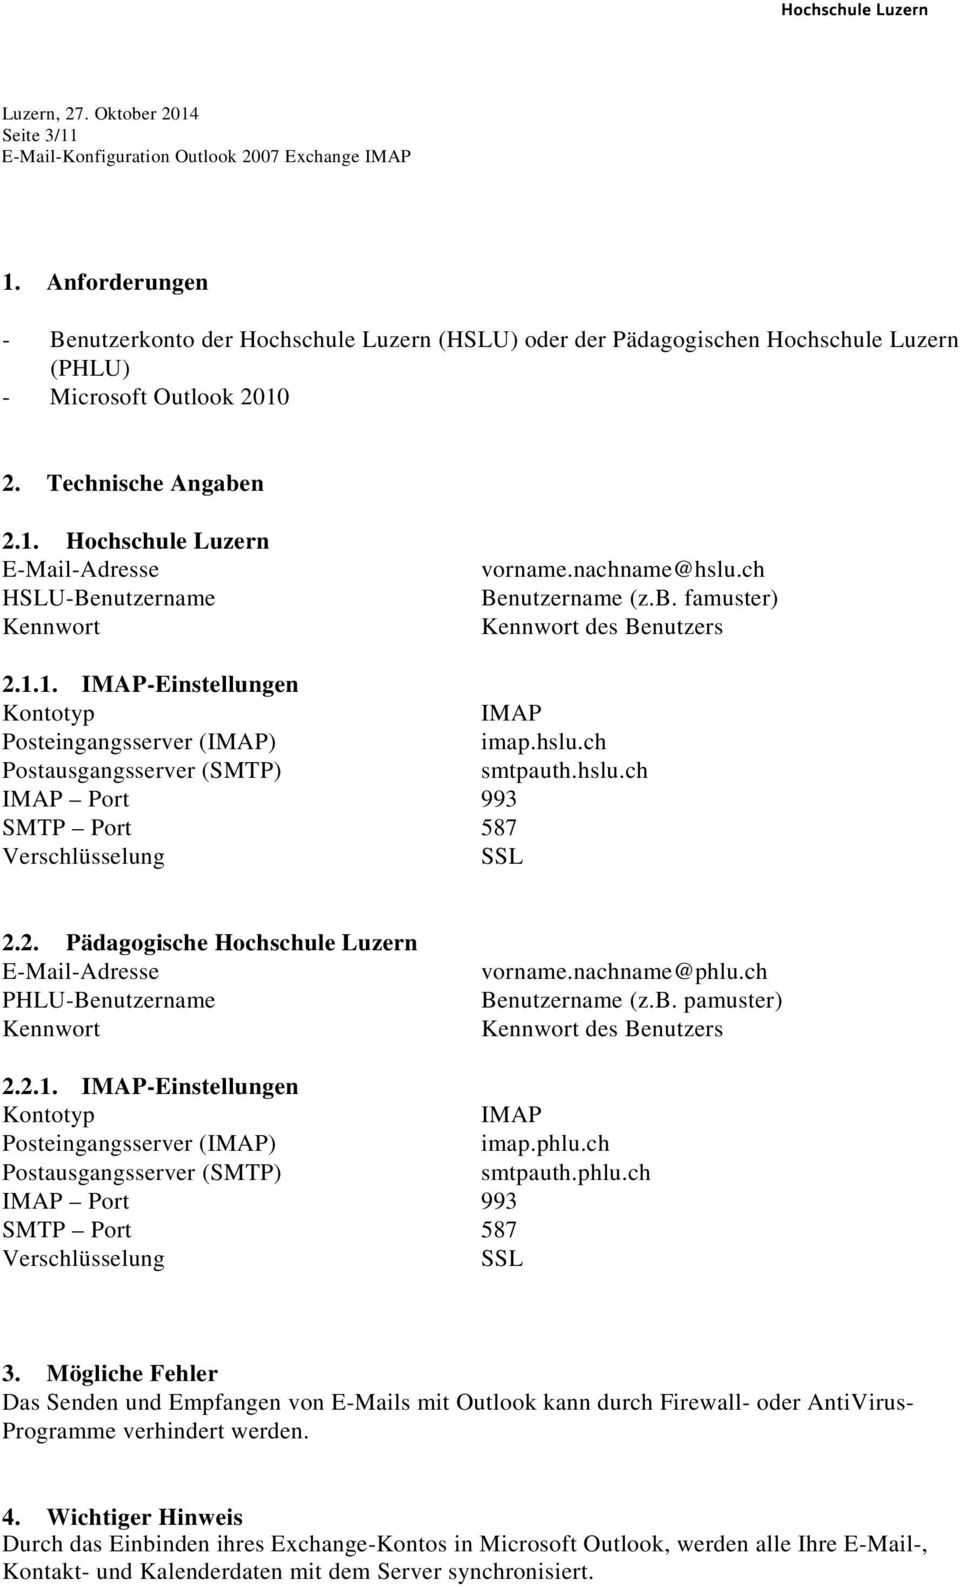 2. Pädagogische Hochschule Luzern E-Mail-Adresse PHLU-Benutzername Kennwort vorname.nachname@phlu.ch Benutzername (z.b. pamuster) Kennwort des Benutzers 2.2.1.